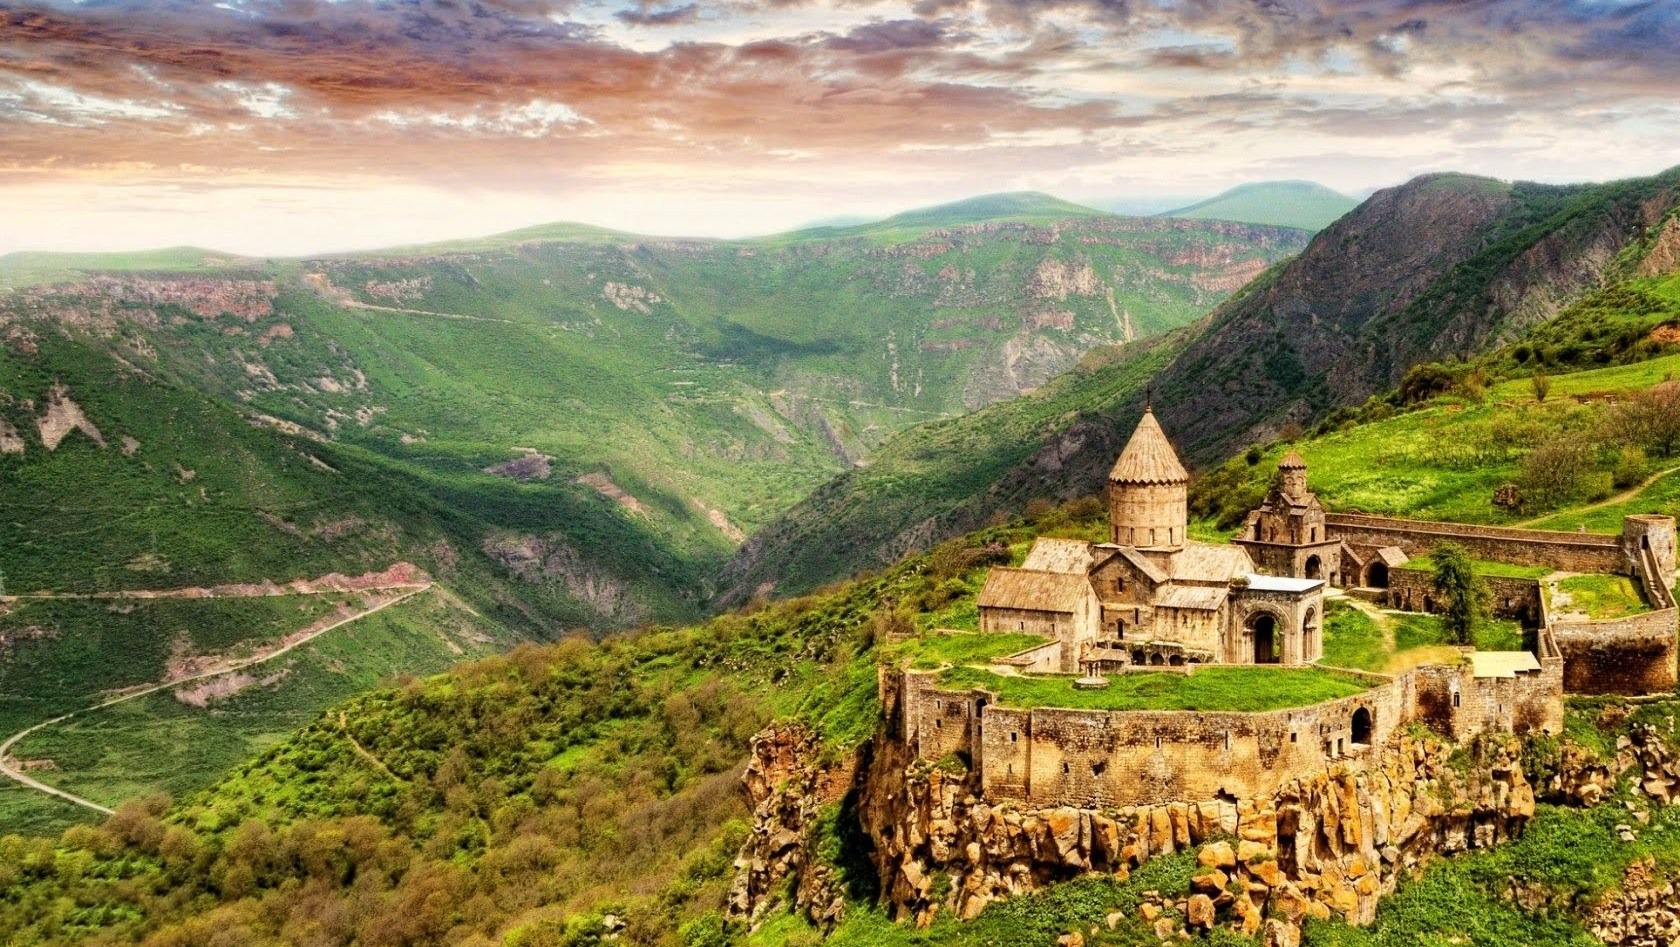 visit to armenia